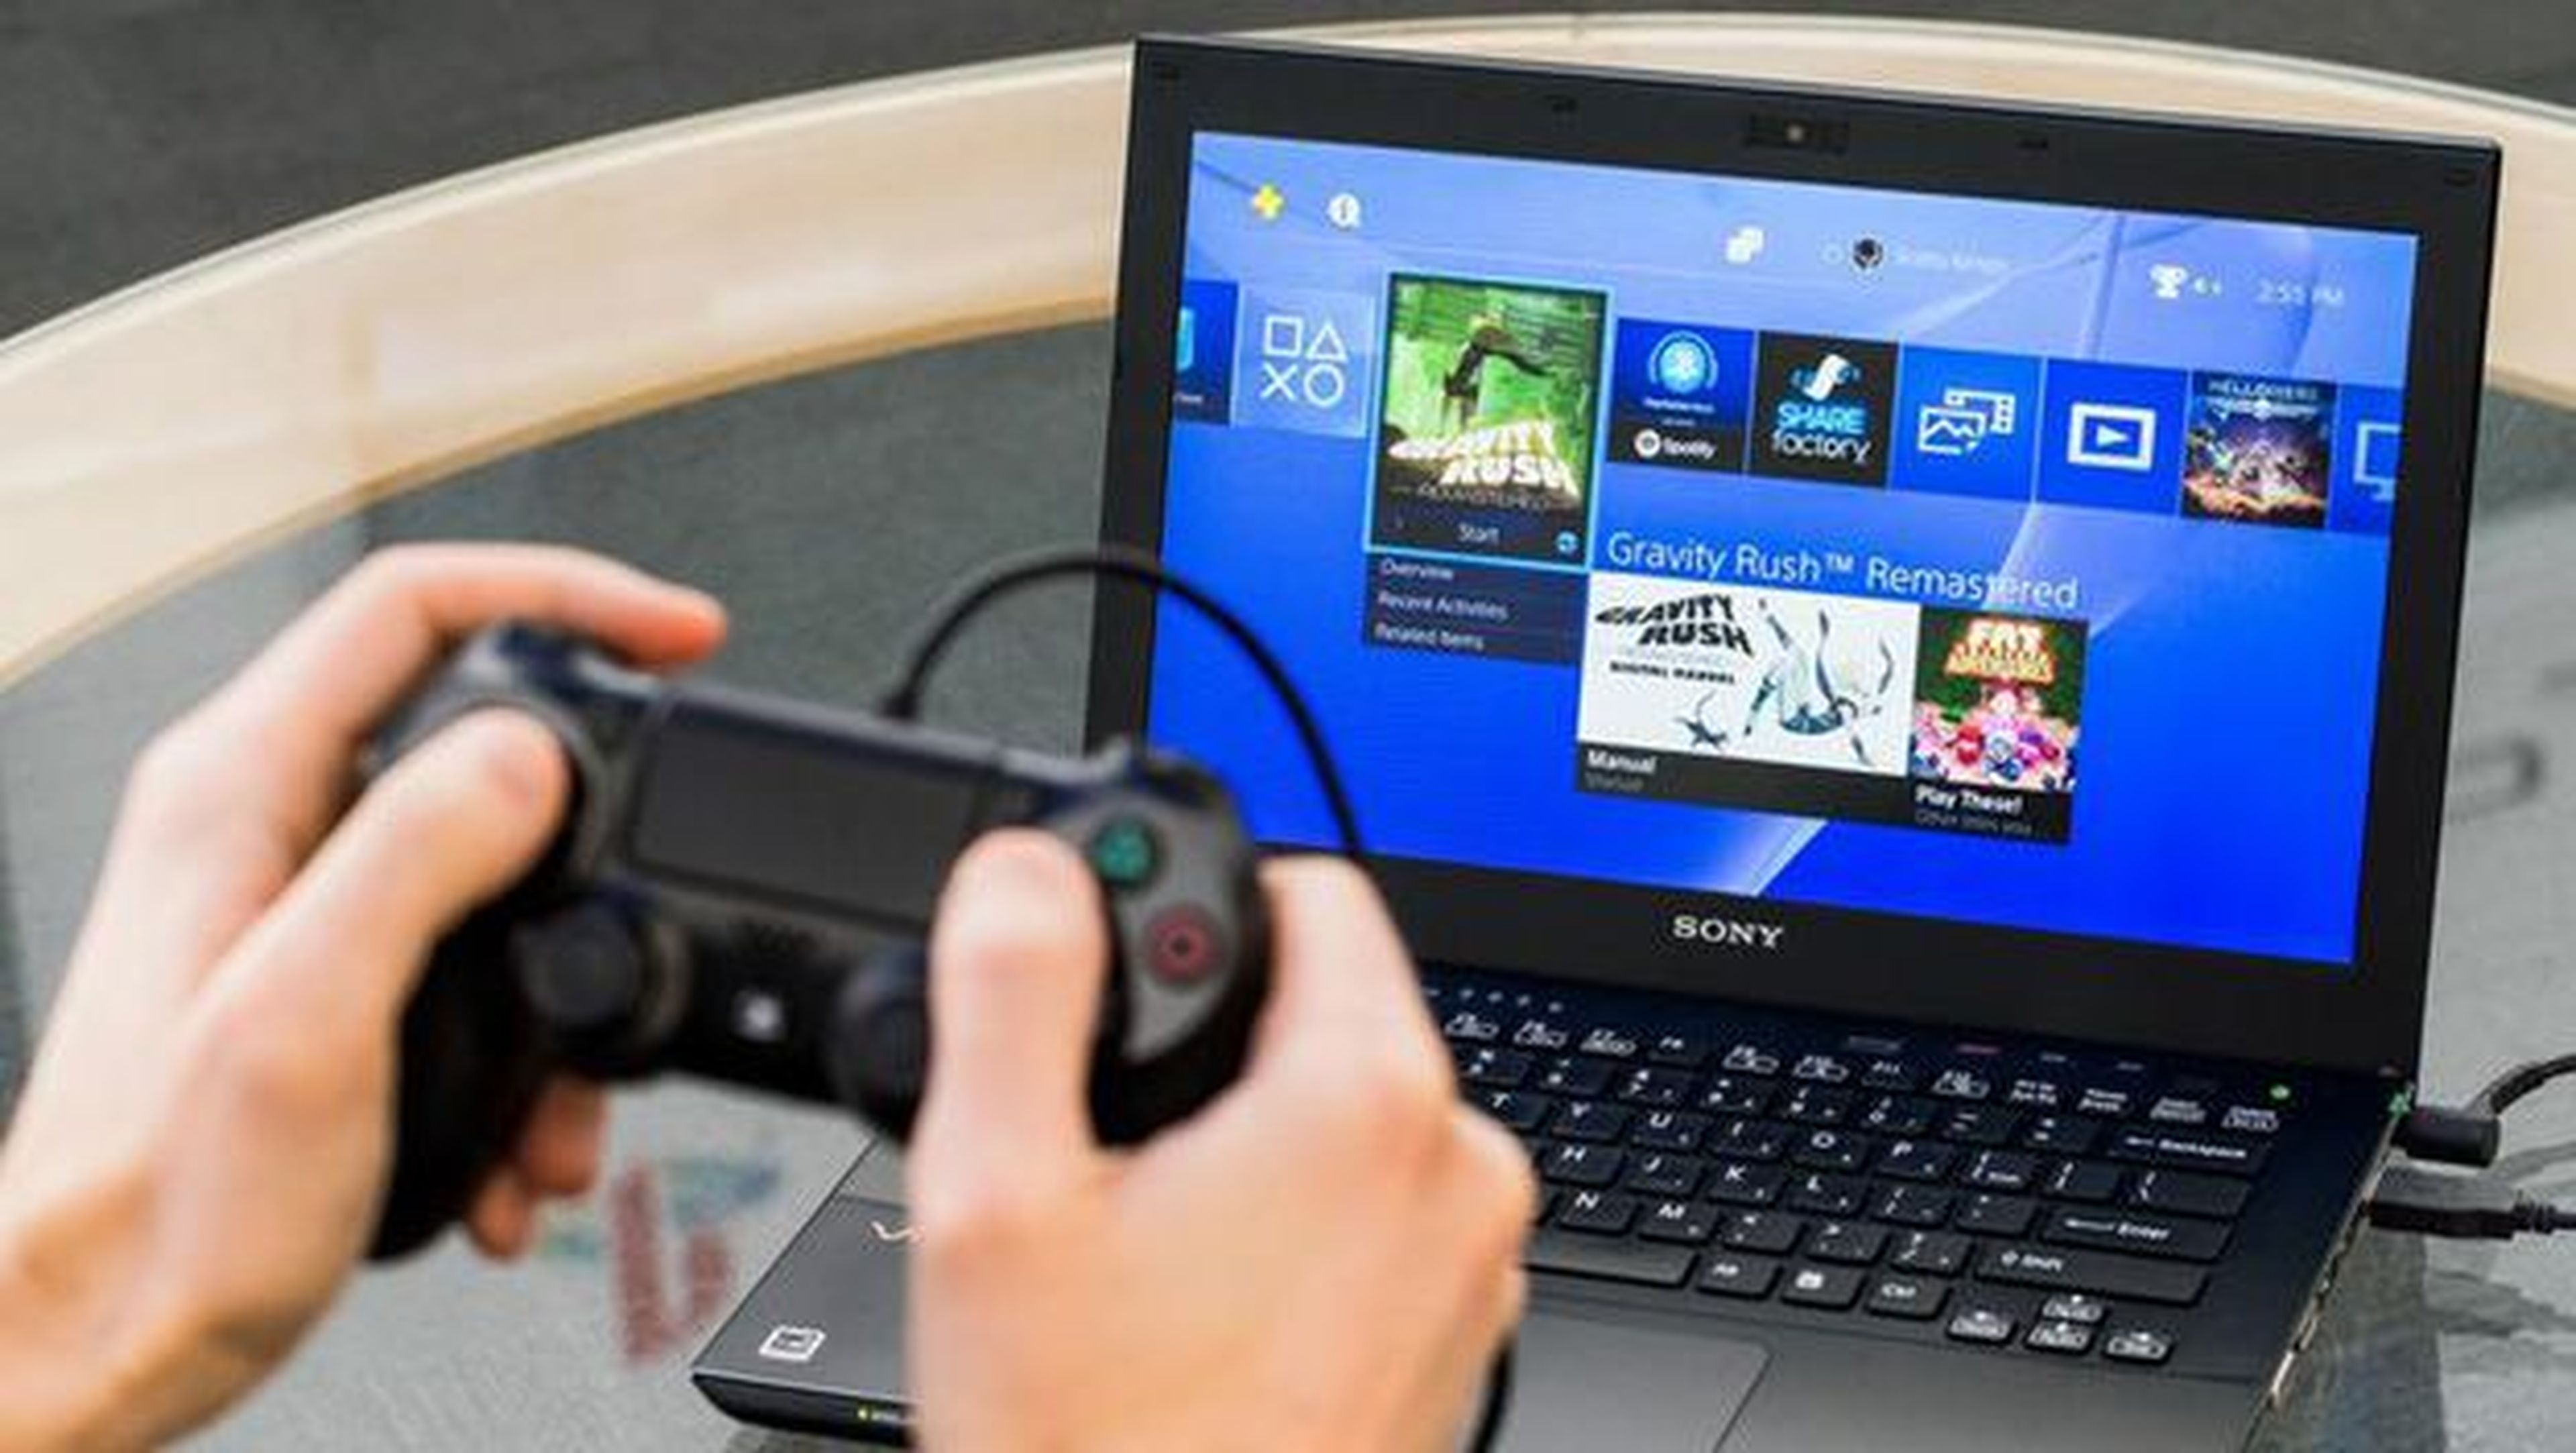 Microsoft sigue insistiendo en cerrar un acuerdo con Sony para hacer cross play o juego cruzado